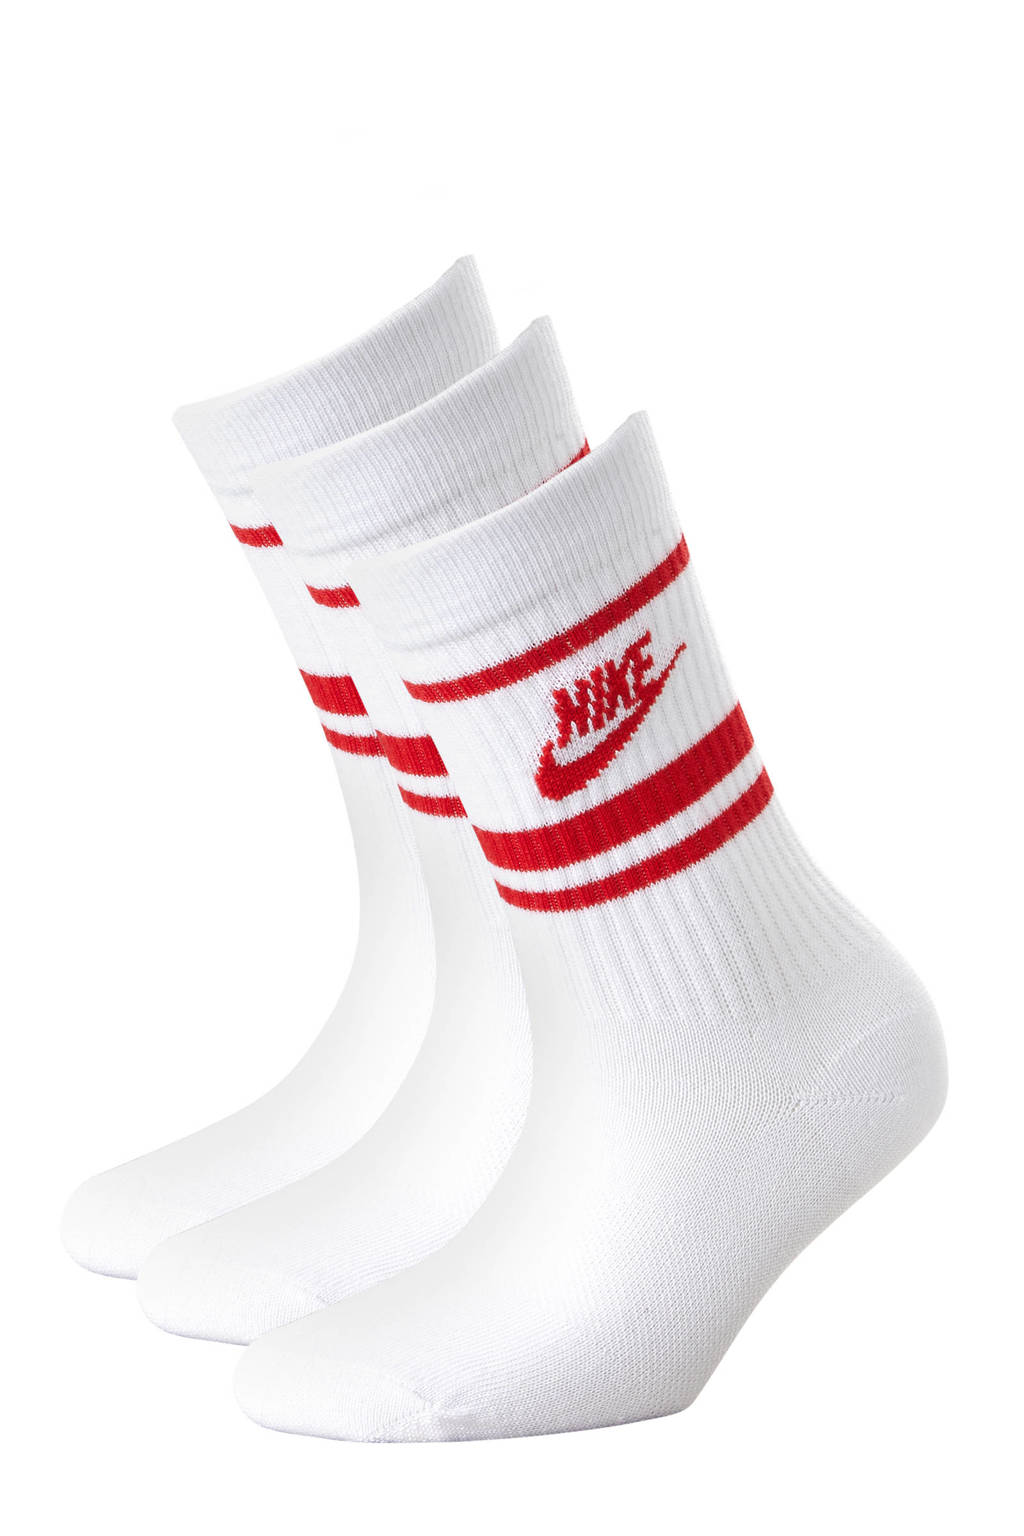 Nike Senior  sportsokken - set van 3 wit/rood